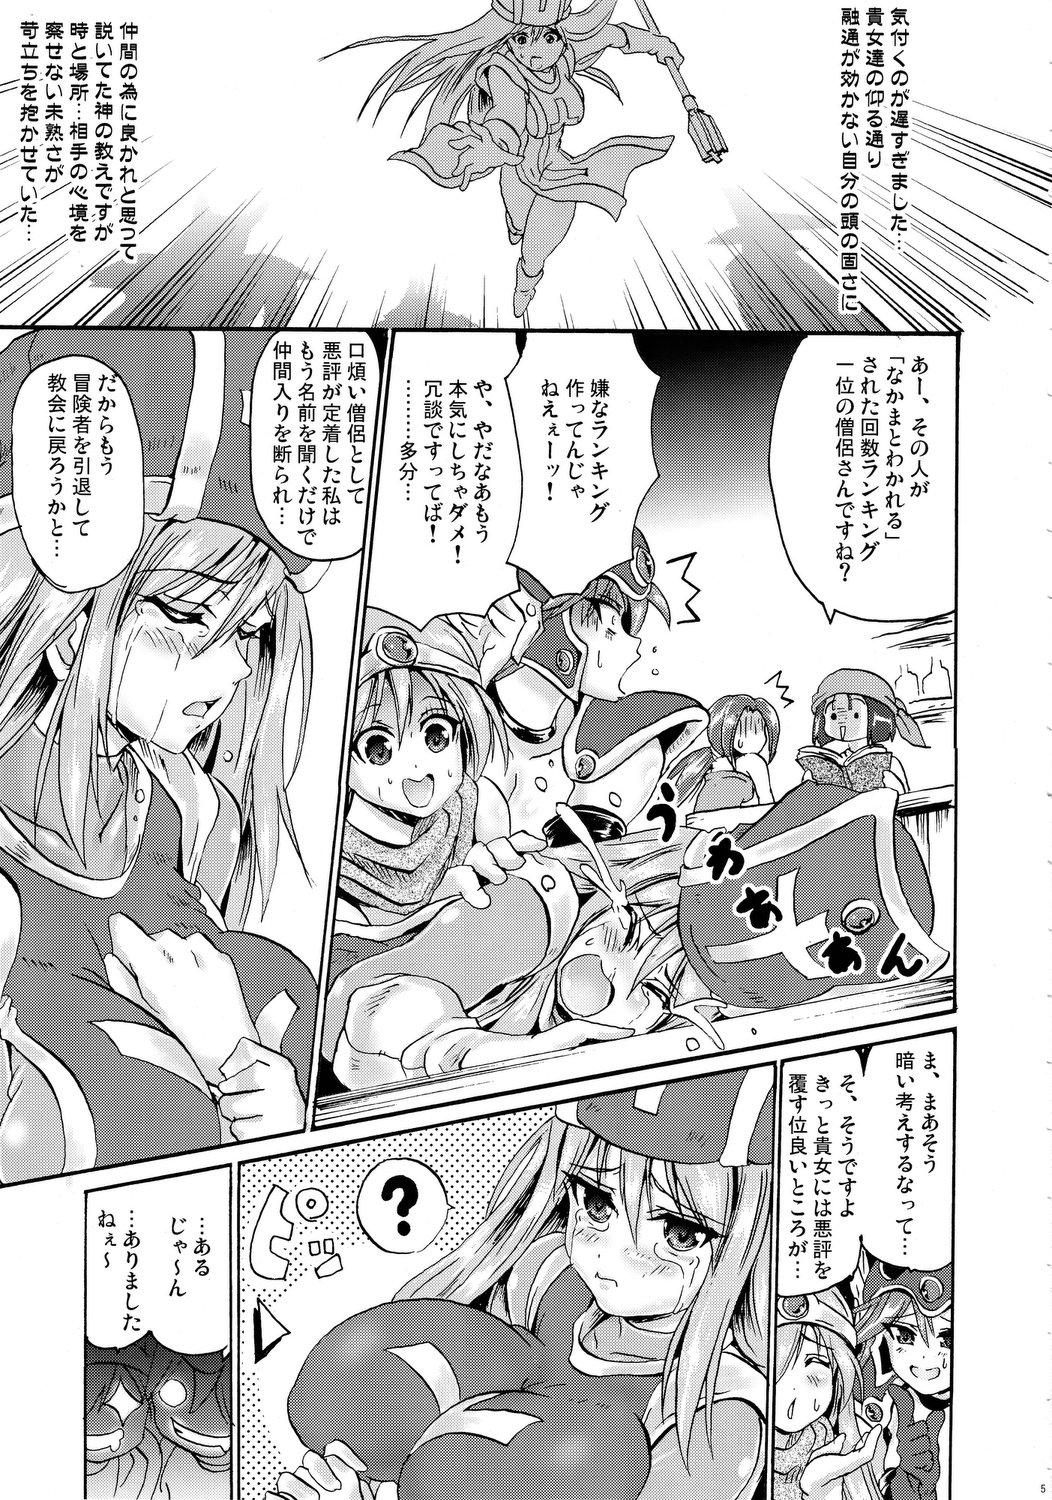 Xxx Sasou Odori - Dragon quest iii Student - Page 4